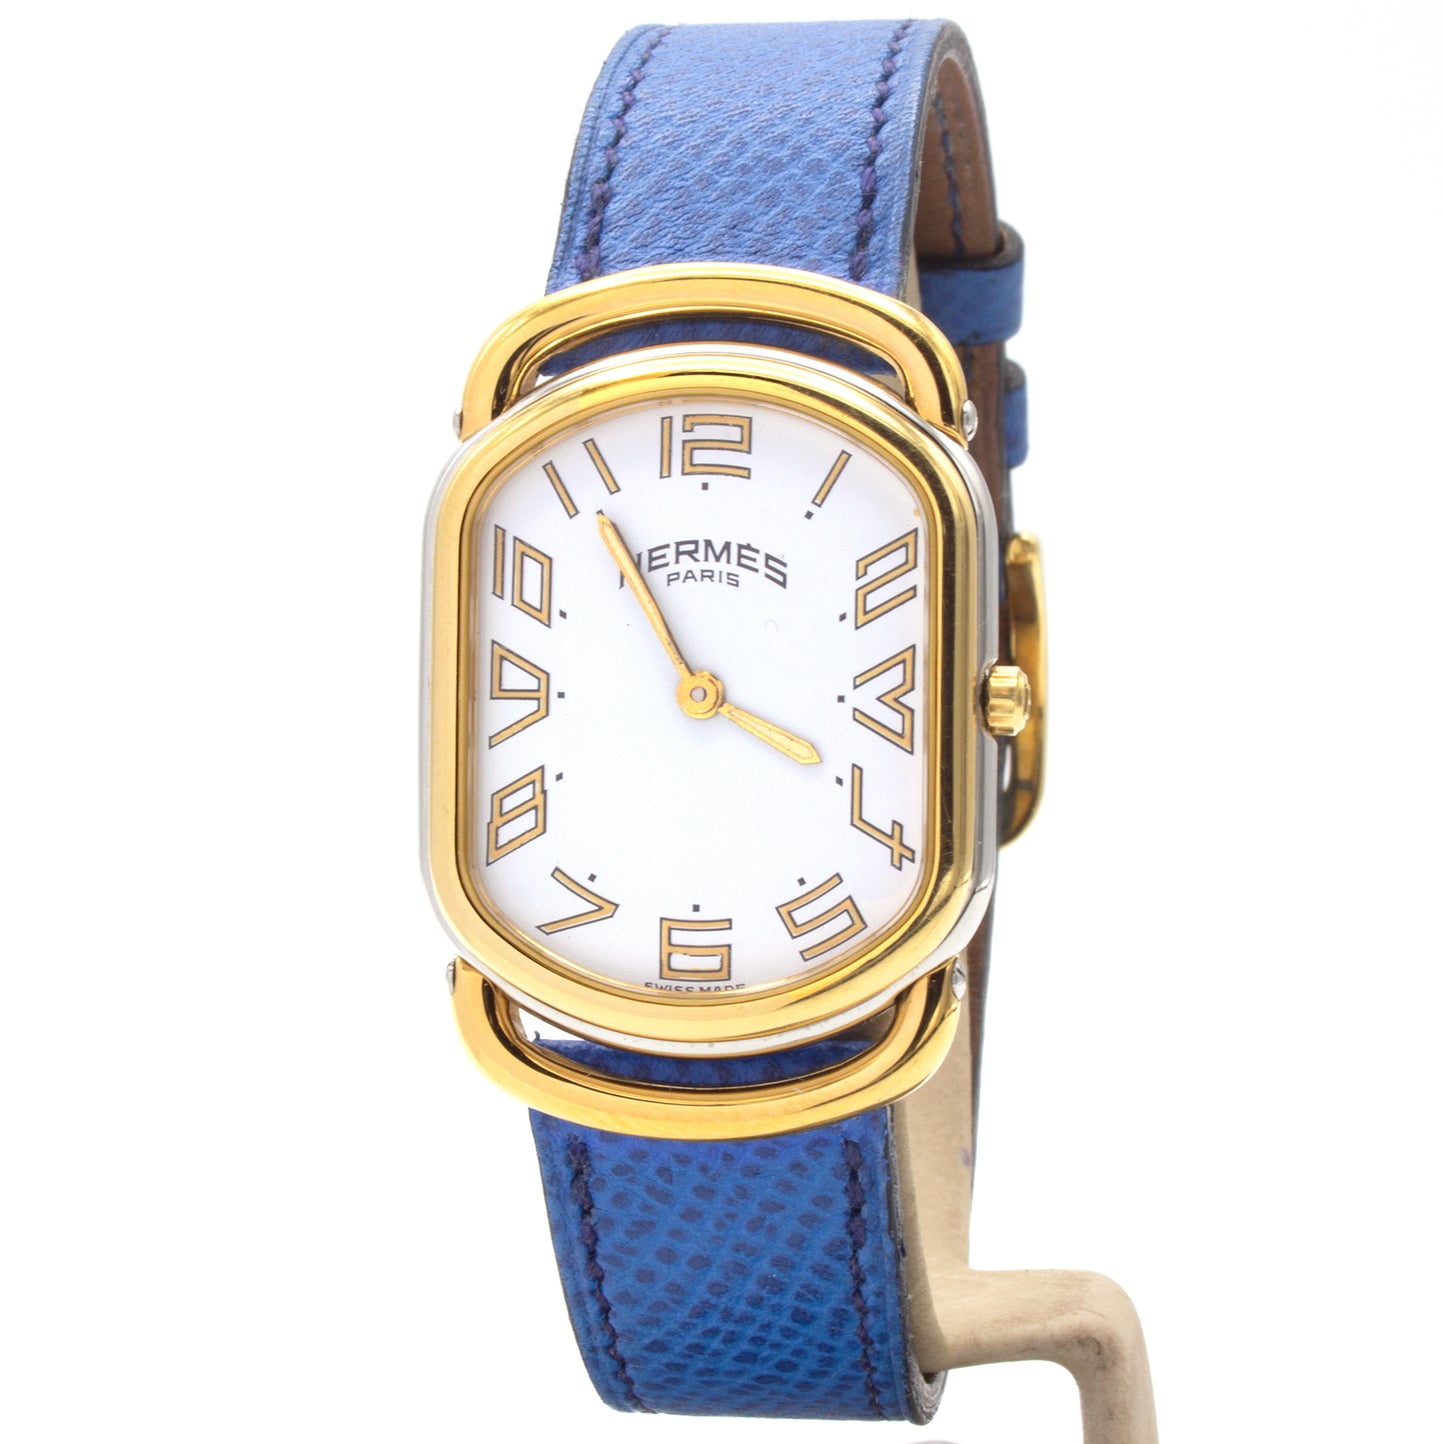 Hermès Rallye (30x25mm) watch